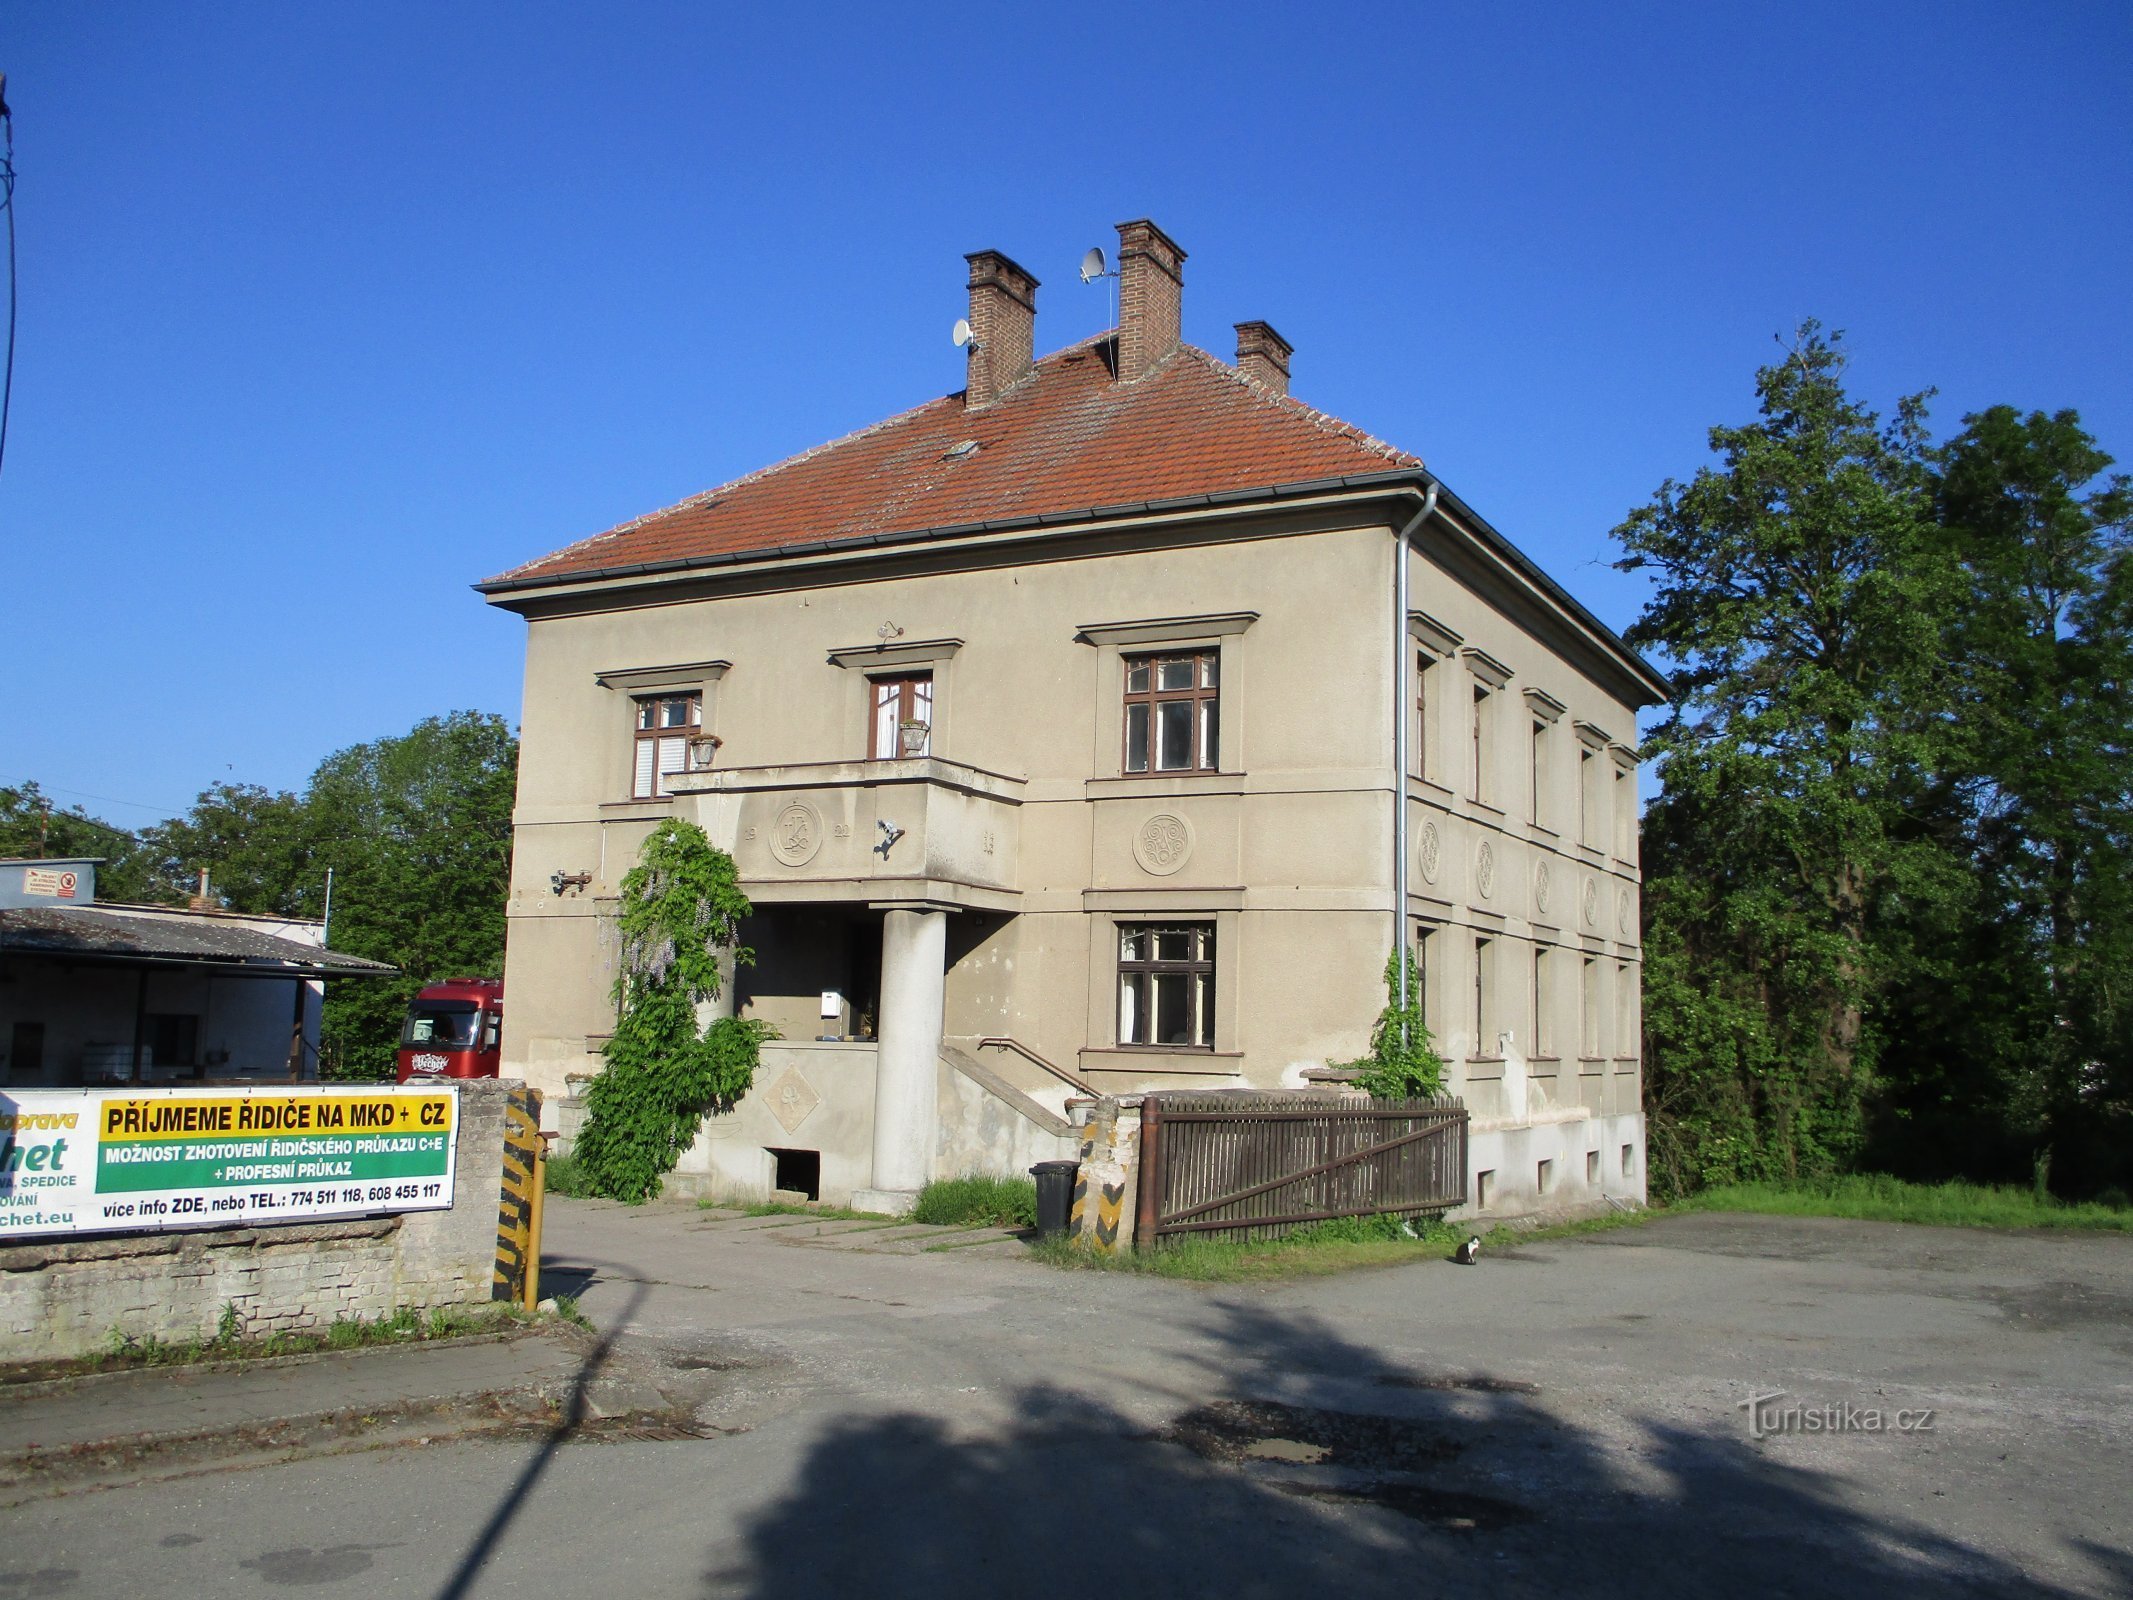 Kozákovy tkalcovna kontorsbyggnad nr 26 (Mokrovousy, 27.5.2020/XNUMX/XNUMX)